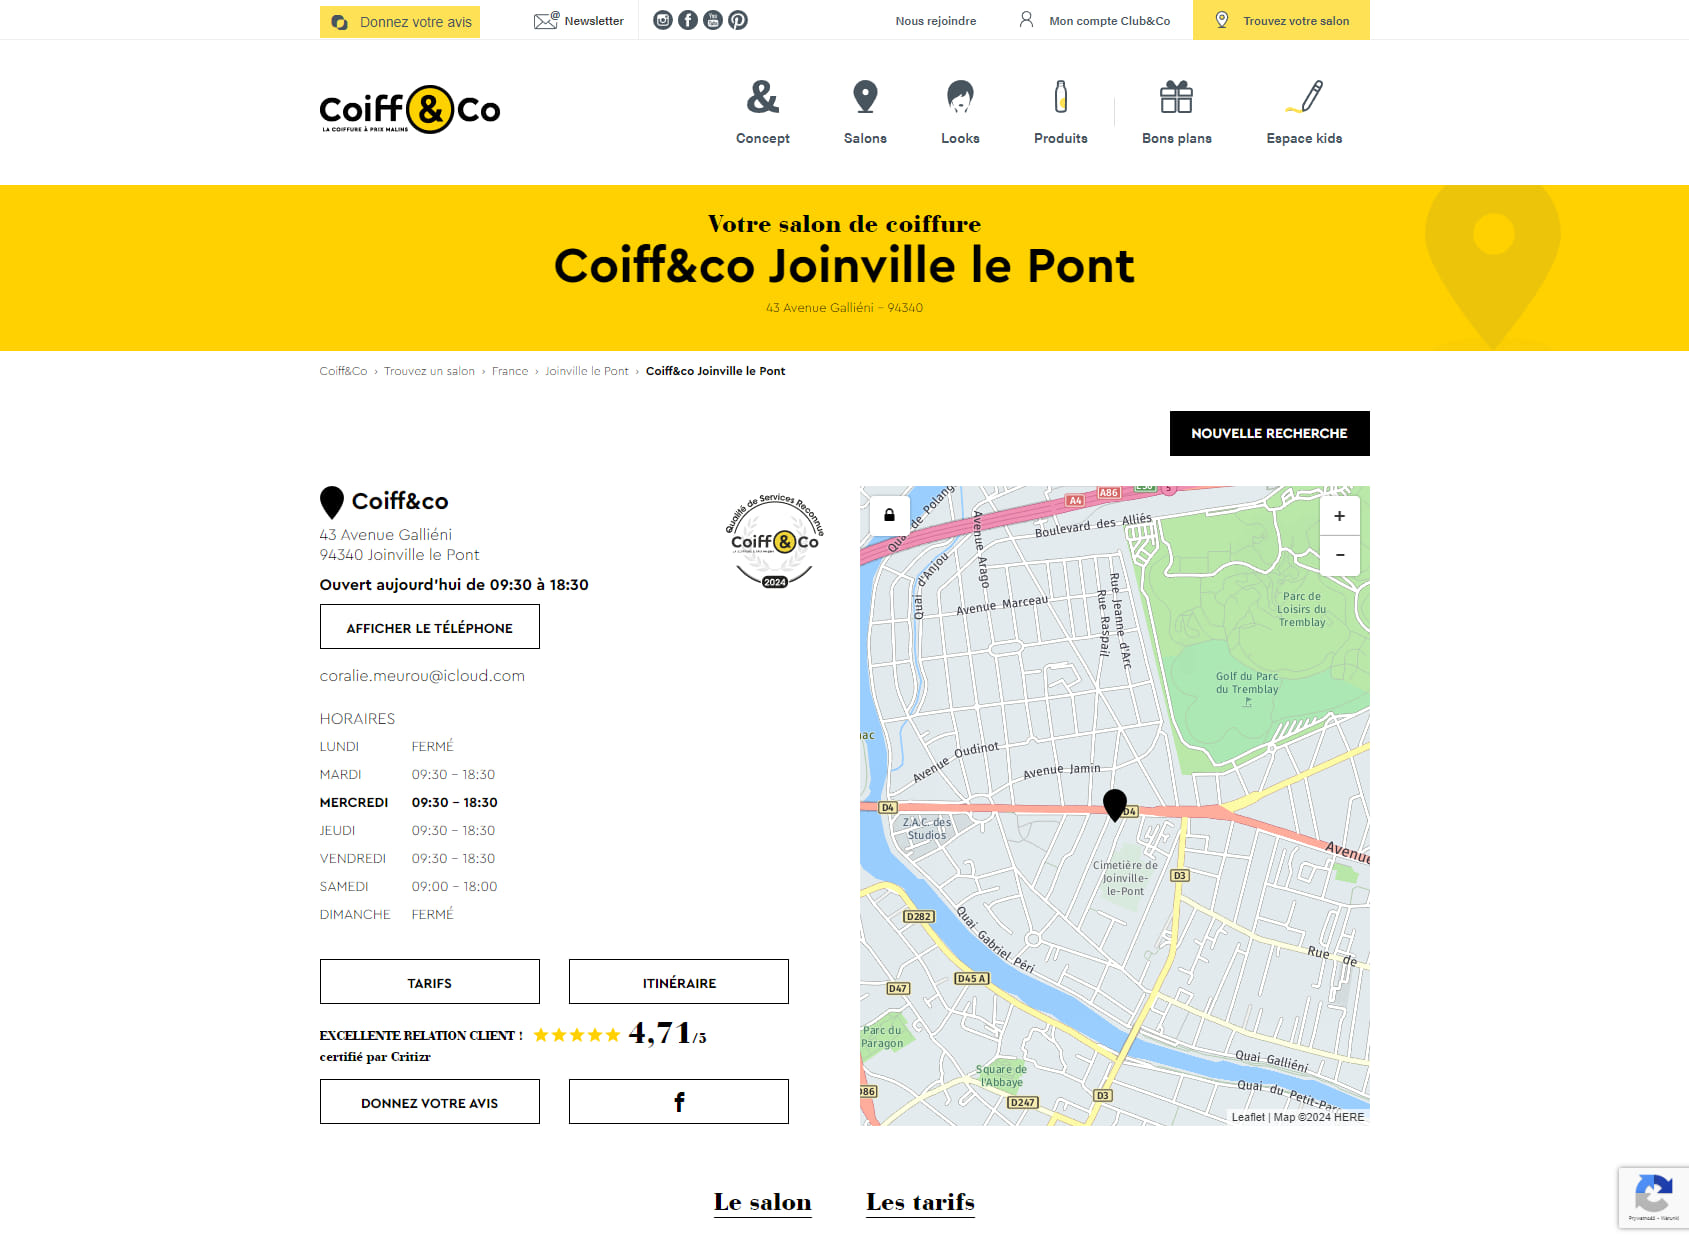 Coiff&Co - Coiffeur Joinville le Pont